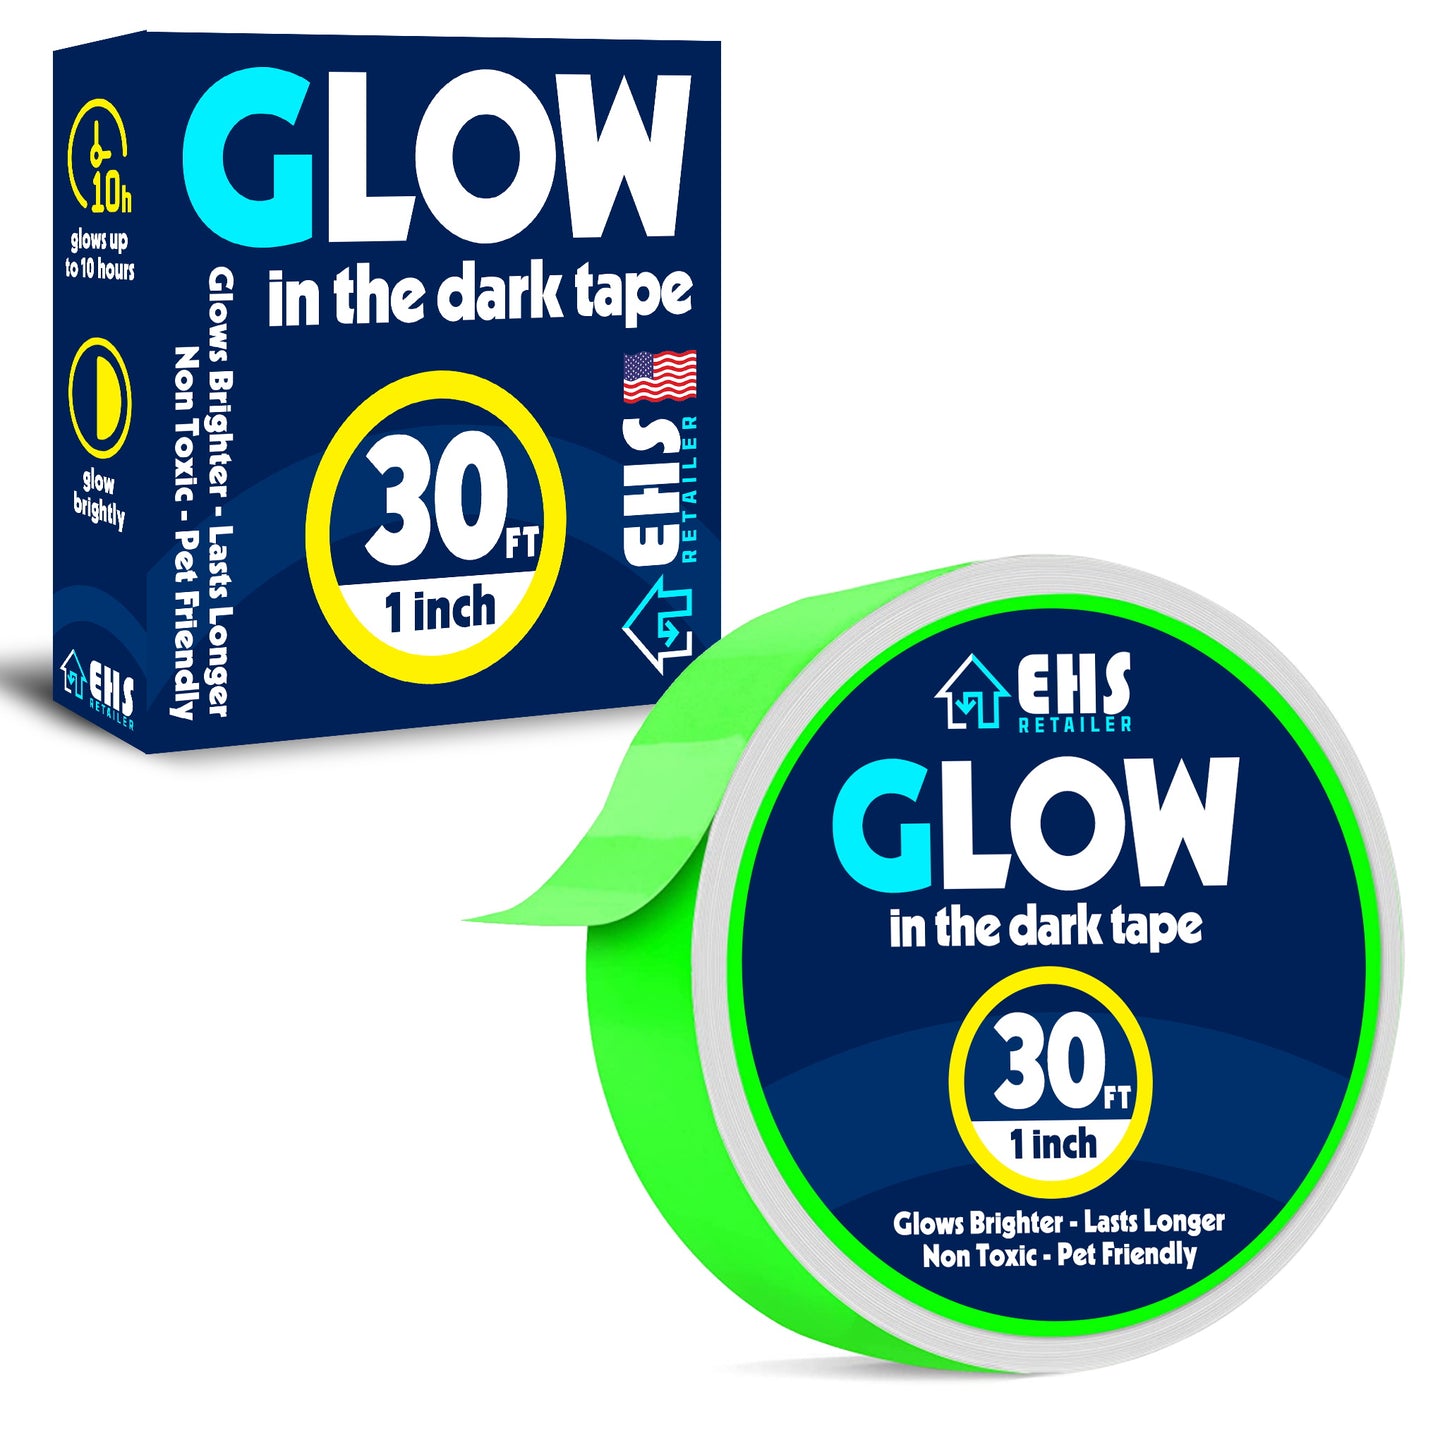 EHS Glow in The Dark Tape, 30Ft x 1In, Waterproof Glow Tape Glow in The Dark, Luminous Tape, Fluorescent Tape, Glow in Dark Duct Tape, Glow Tape for Stage Stair Outdoor